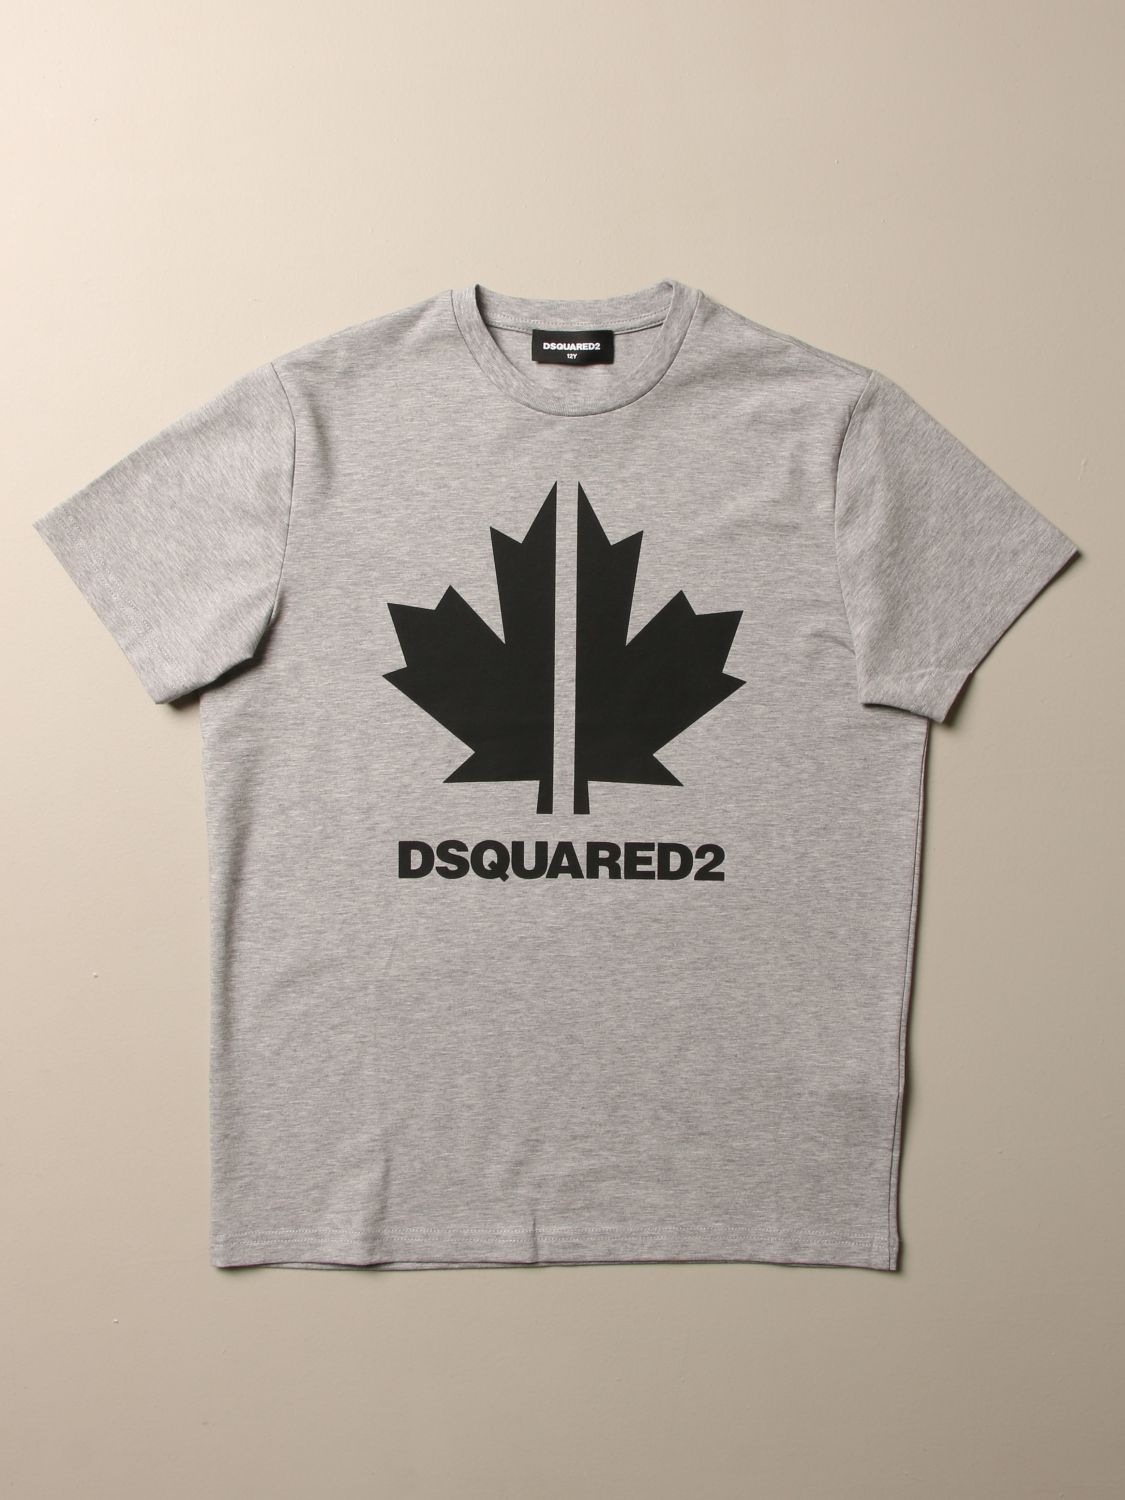 dsquared leaf logo t shirt Off 79% - www.gmcanantnag.net